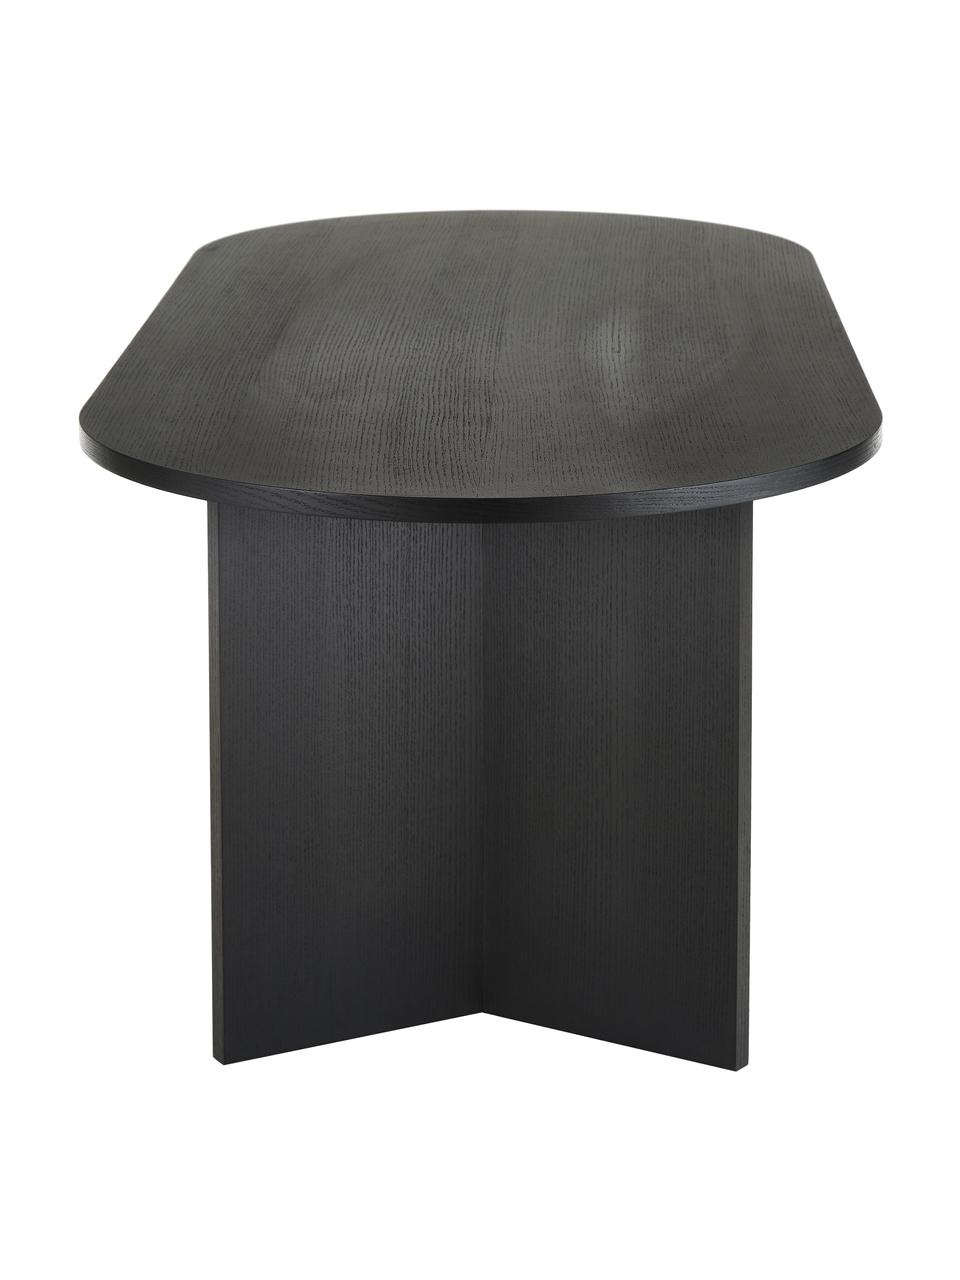 Ovaler Esstisch Toni aus Holz, 200 x 90 cm, Mitteldichte Holzfaserplatte (MDF) mit Eichenholzfurnier, lackiert, Eichenholz, schwarz lackiert, B 200 x T 90 cm